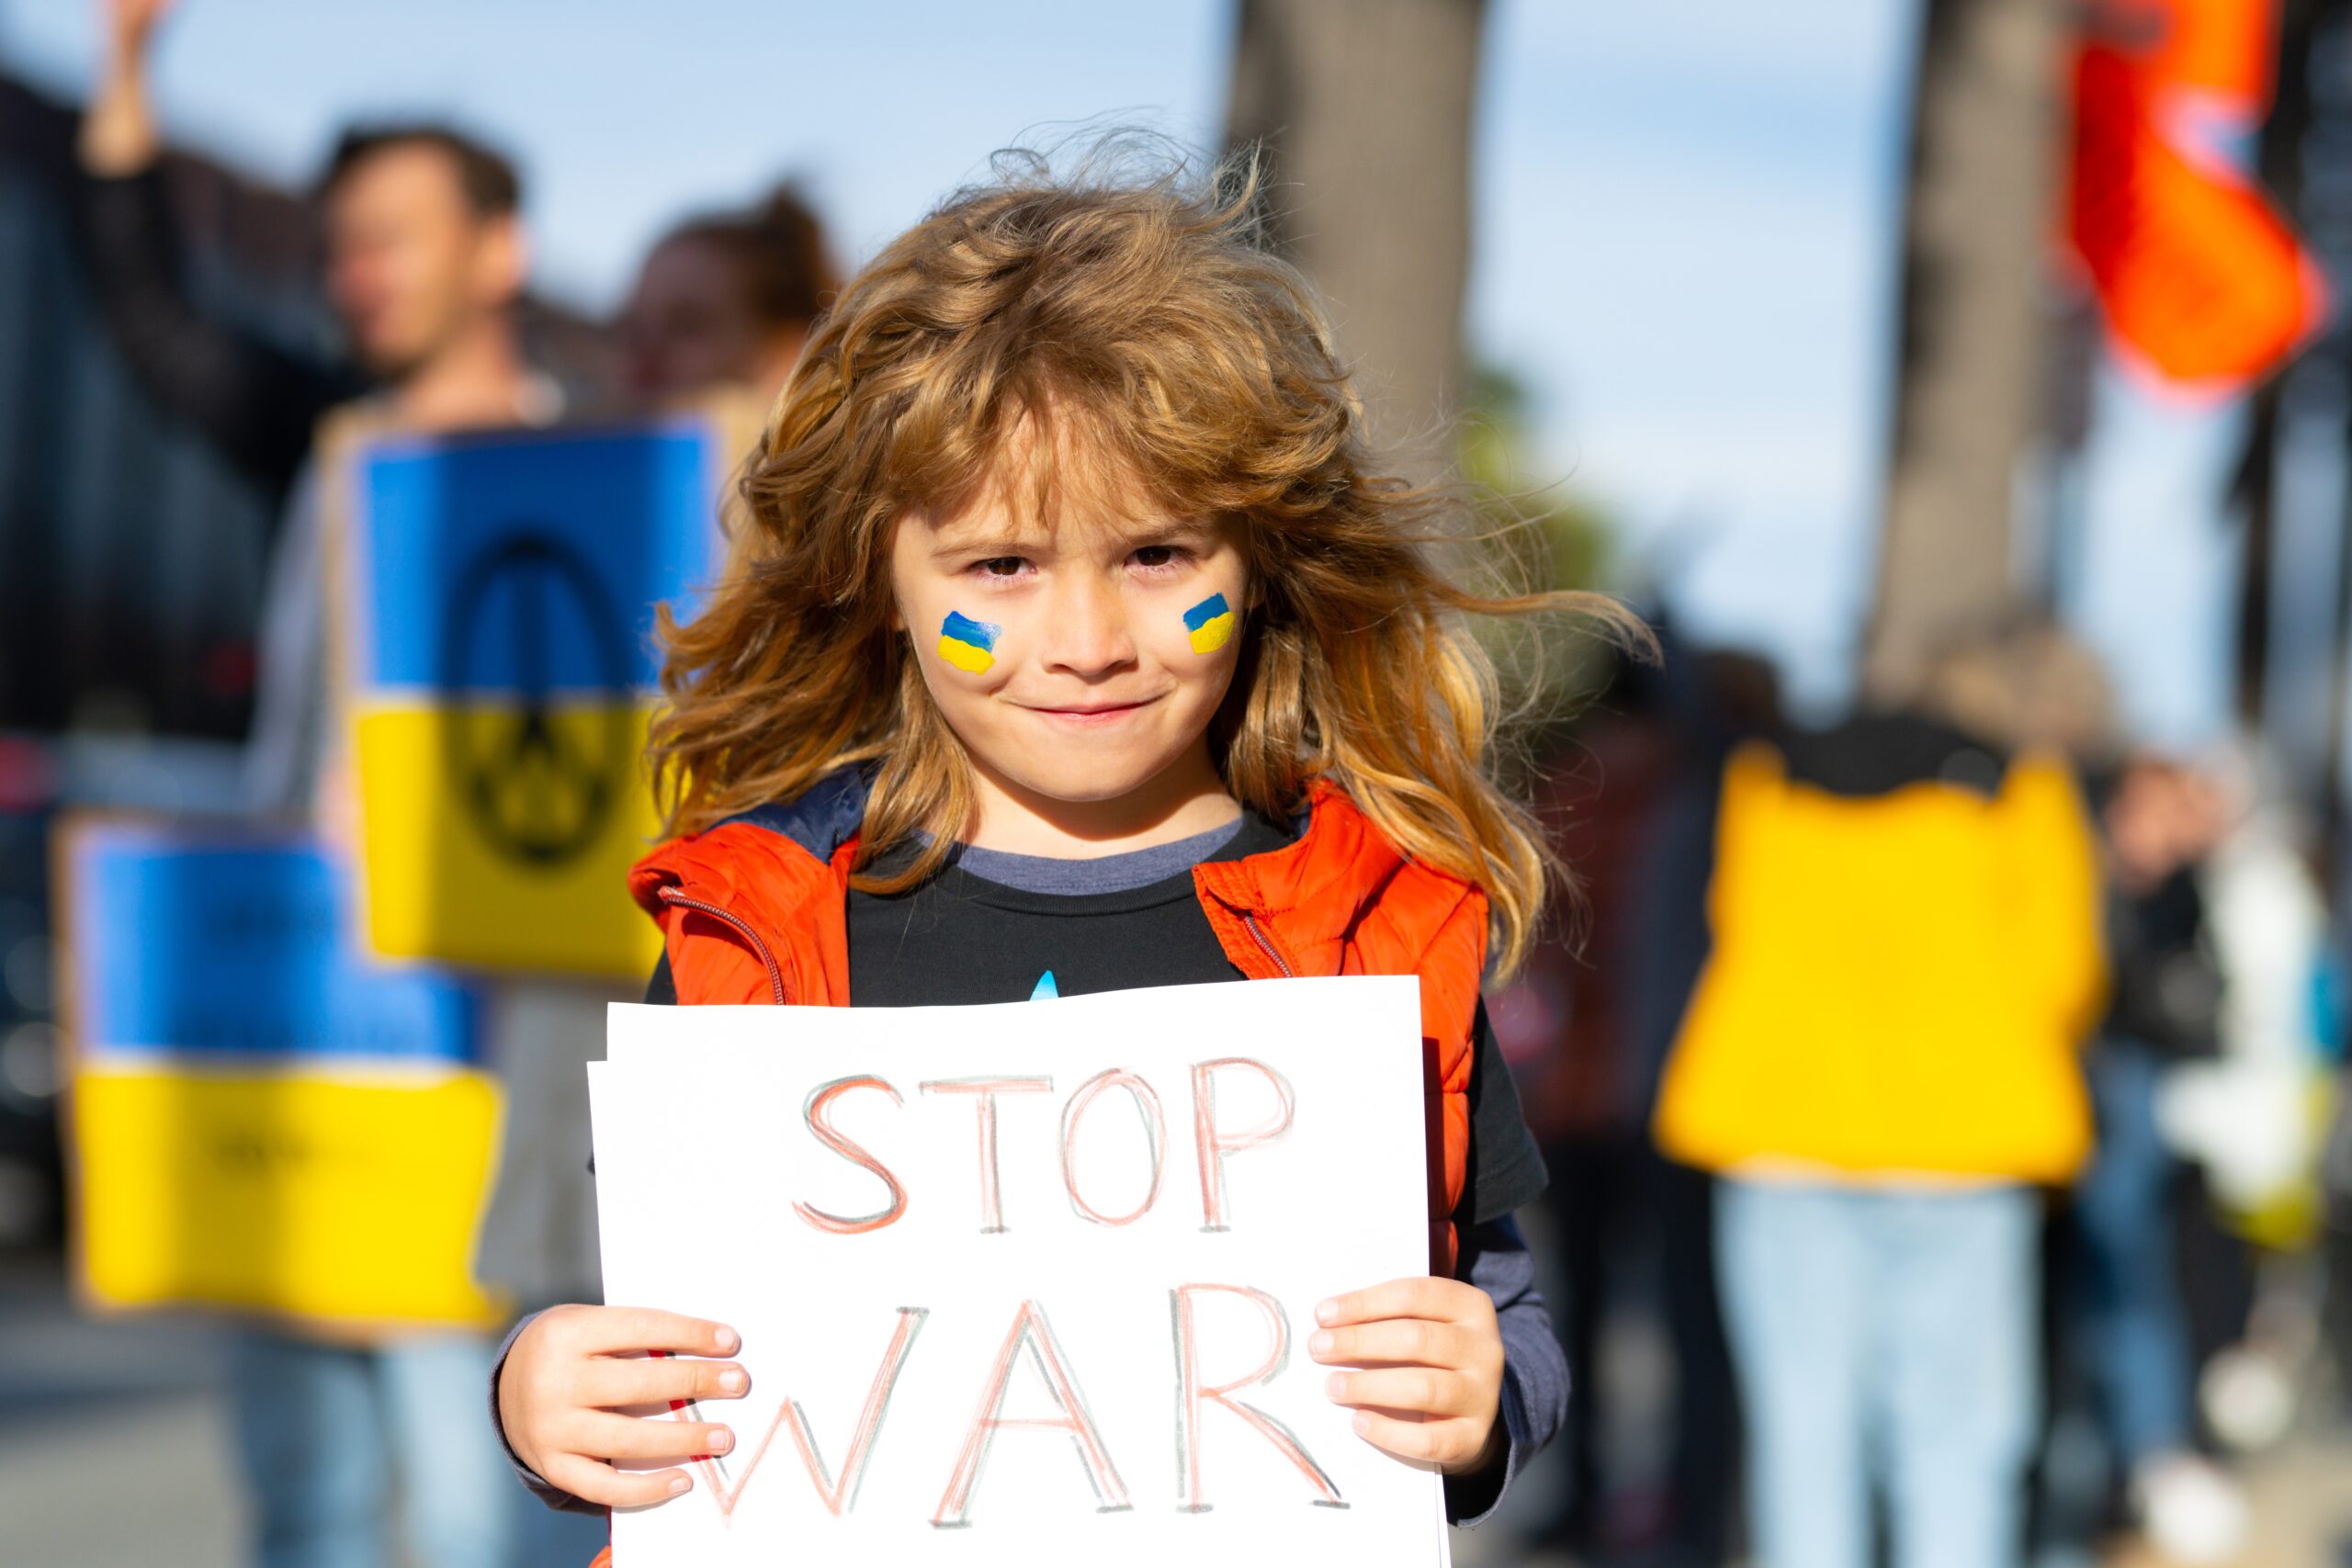 come spiegare la guerra ai bambini, guerra, Ucraina, Russia